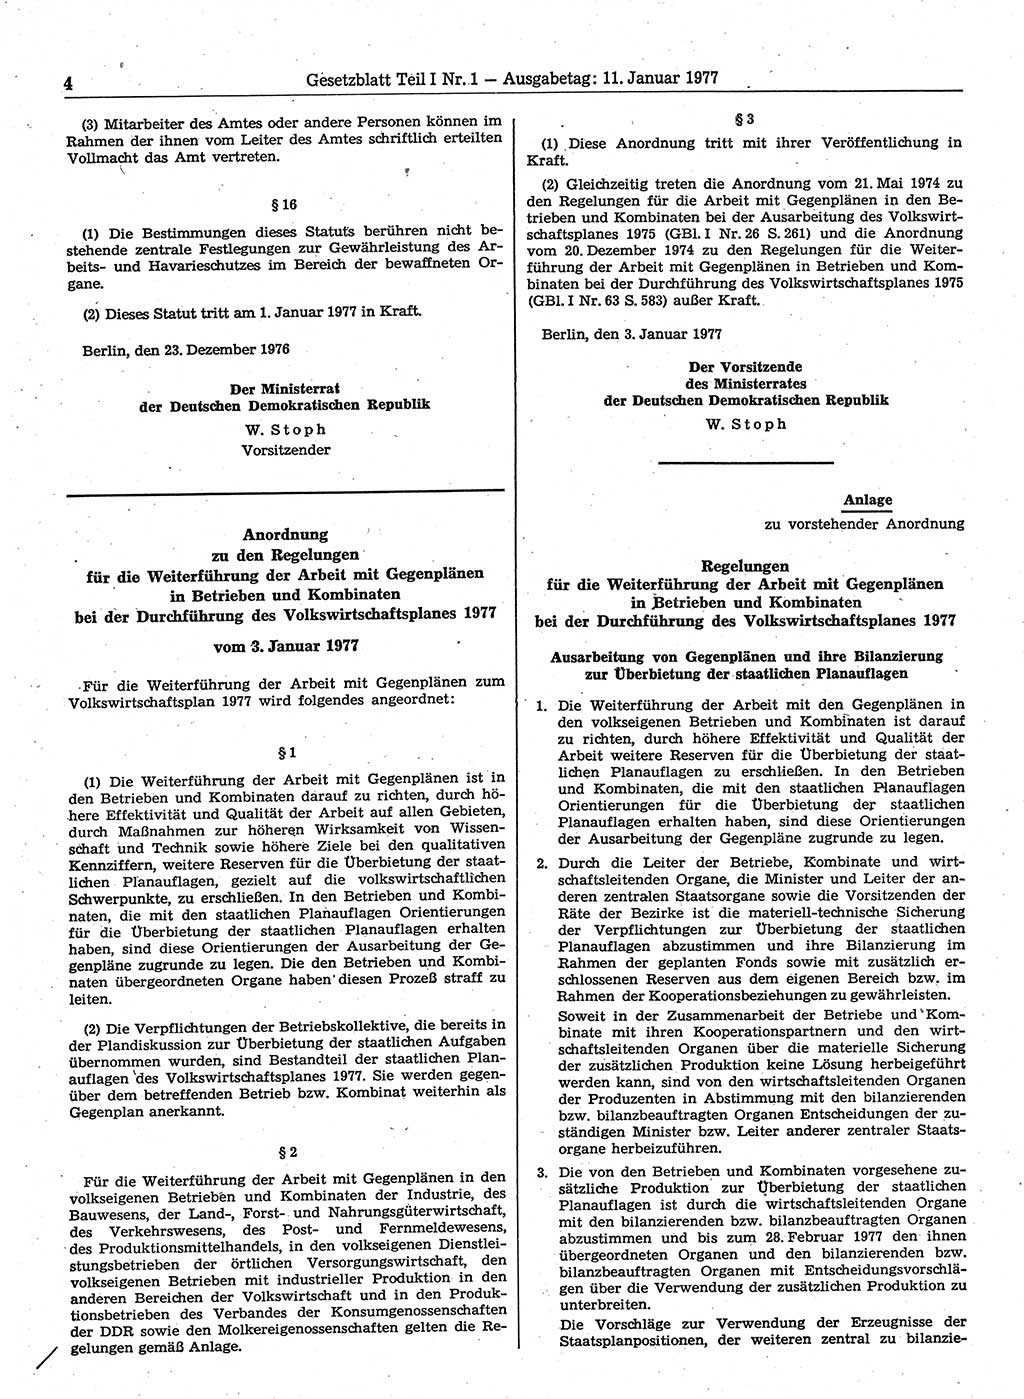 Gesetzblatt (GBl.) der Deutschen Demokratischen Republik (DDR) Teil Ⅰ 1977, Seite 4 (GBl. DDR Ⅰ 1977, S. 4)